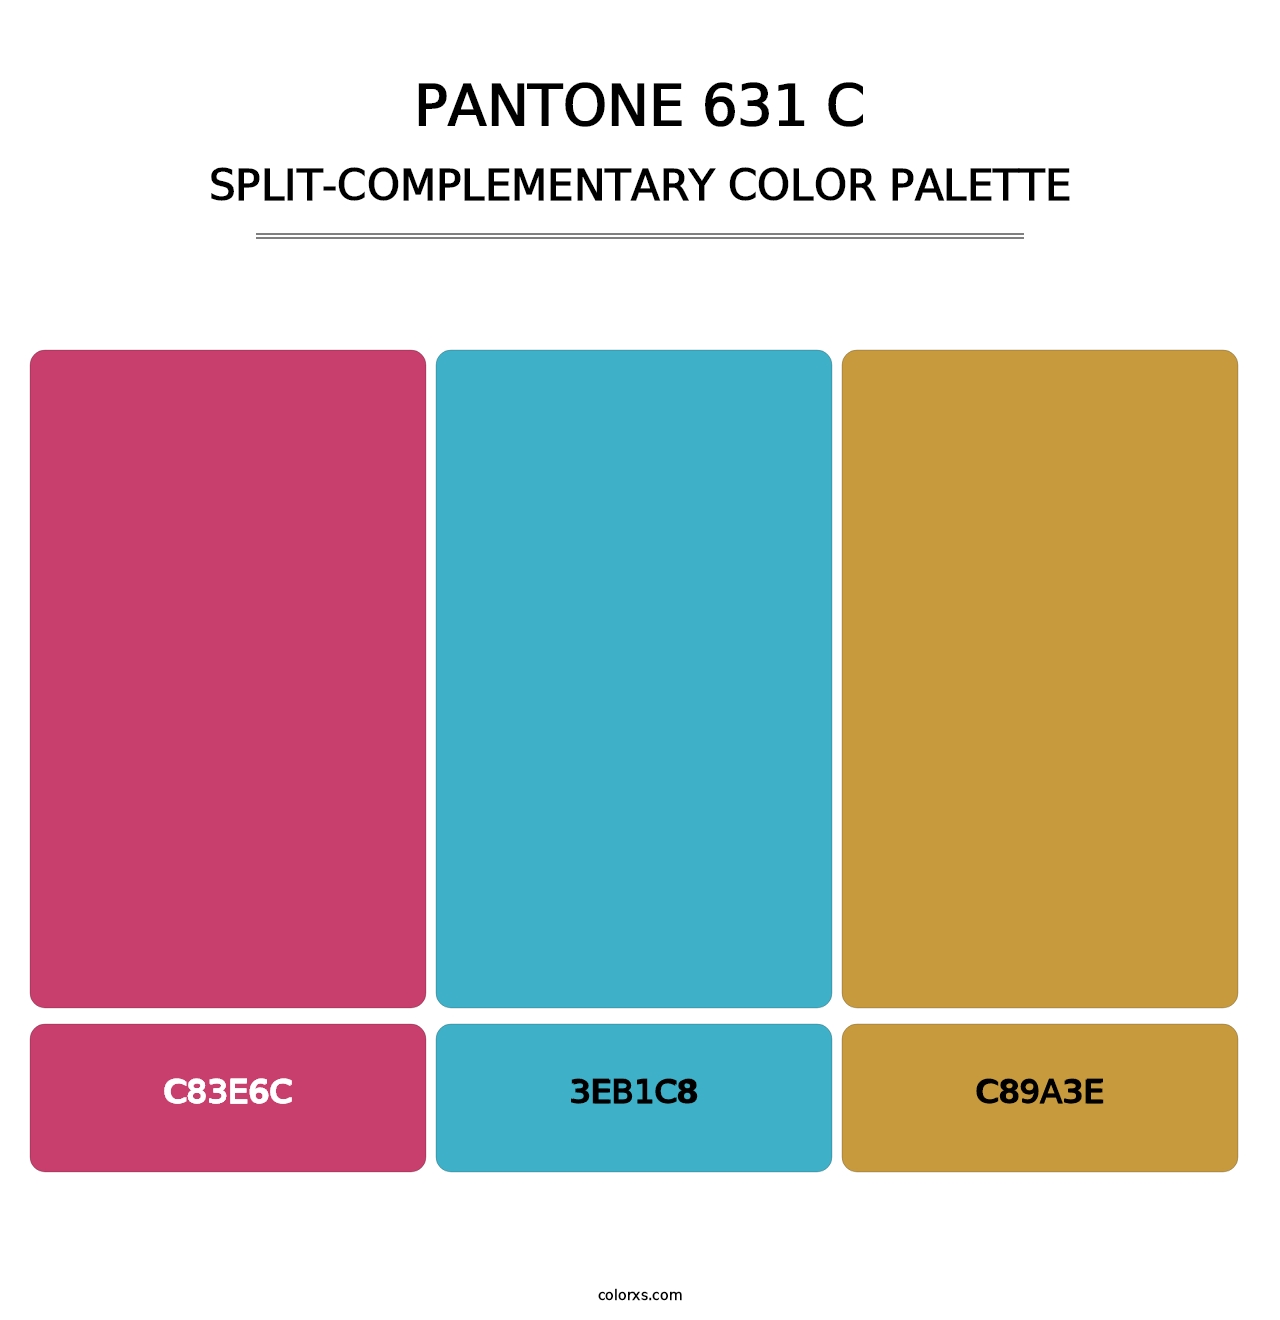 PANTONE 631 C - Split-Complementary Color Palette